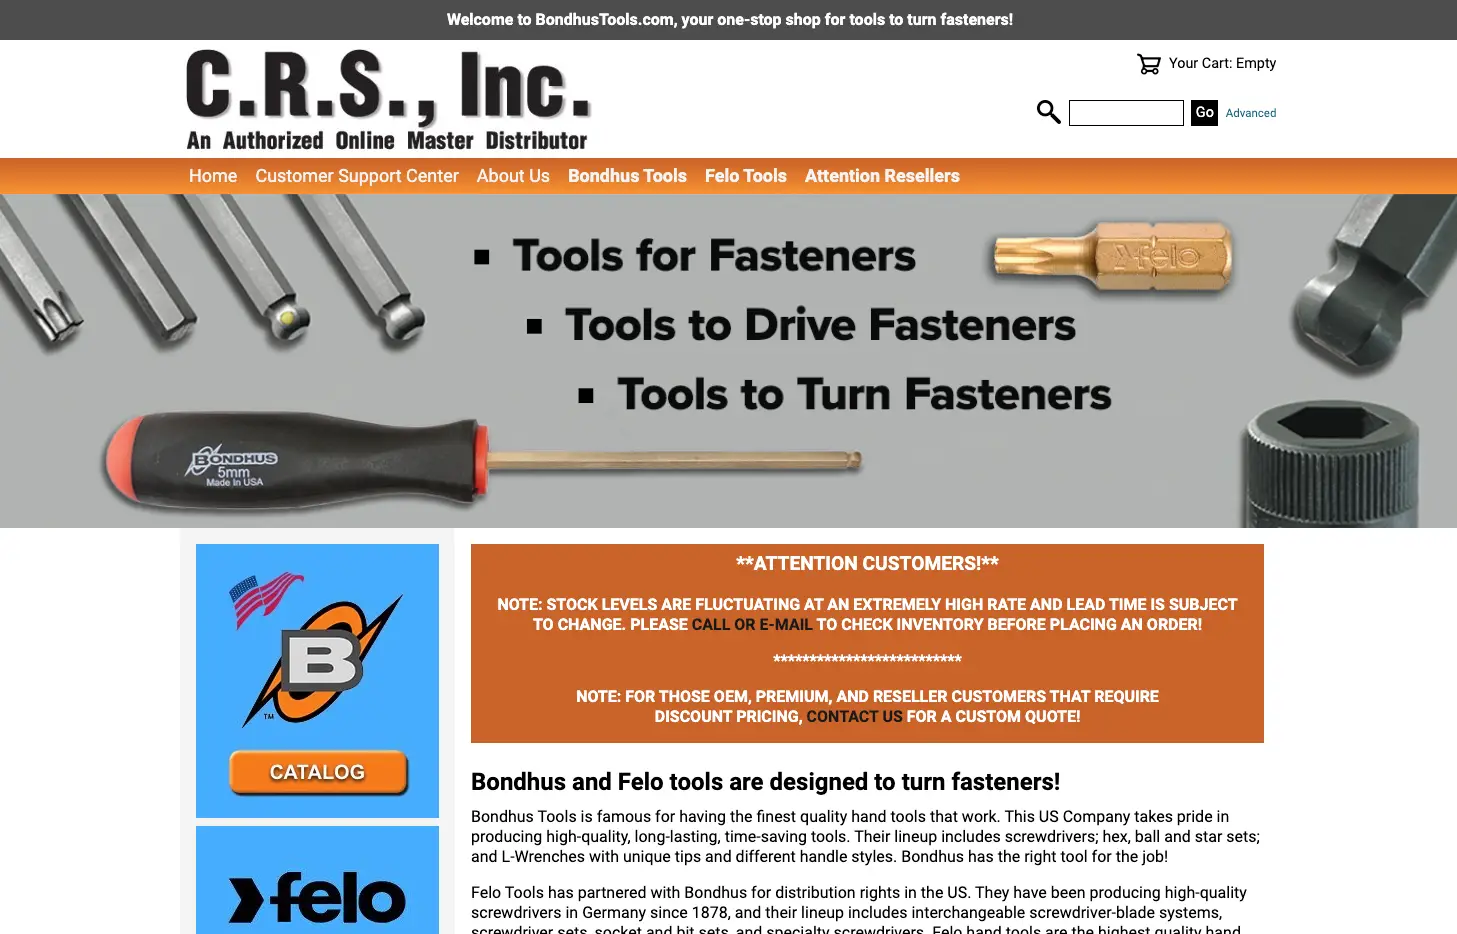 BondhusTools.com a master distributor for Bondhus Tools and Felo Tools